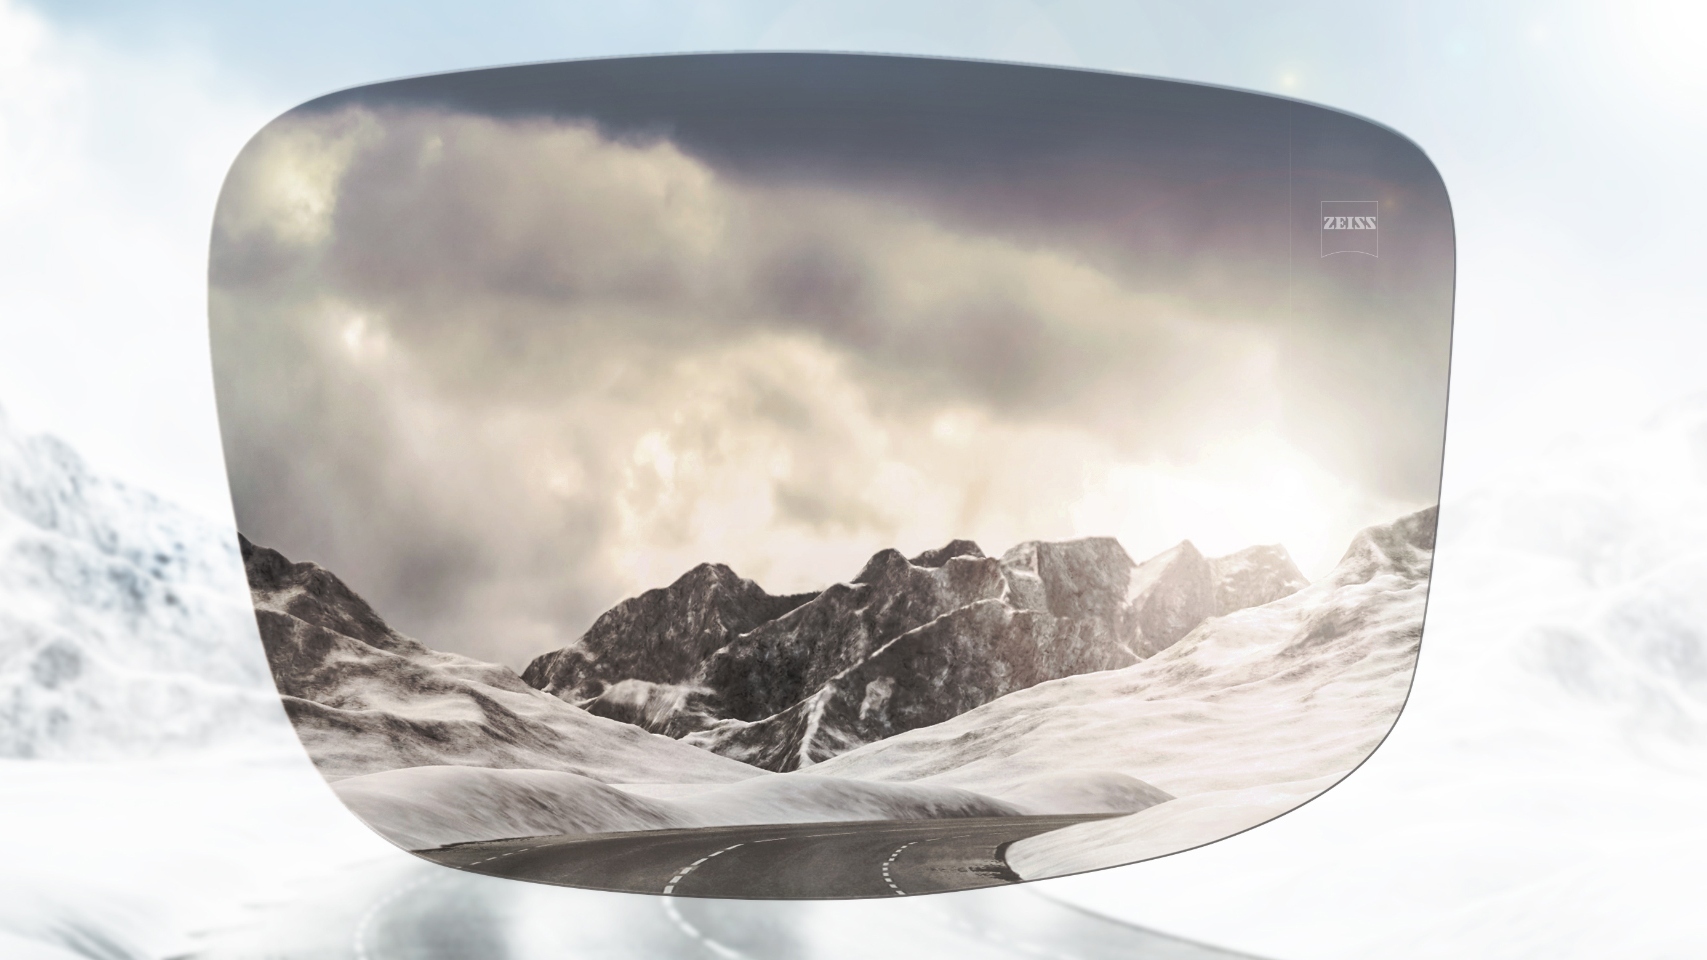 Vue d’une route de montagne enneigée avec et sans verres polarisés. Avec des verres polarisés, l’éblouissement est réduit pour une vue plus nette devant soi.